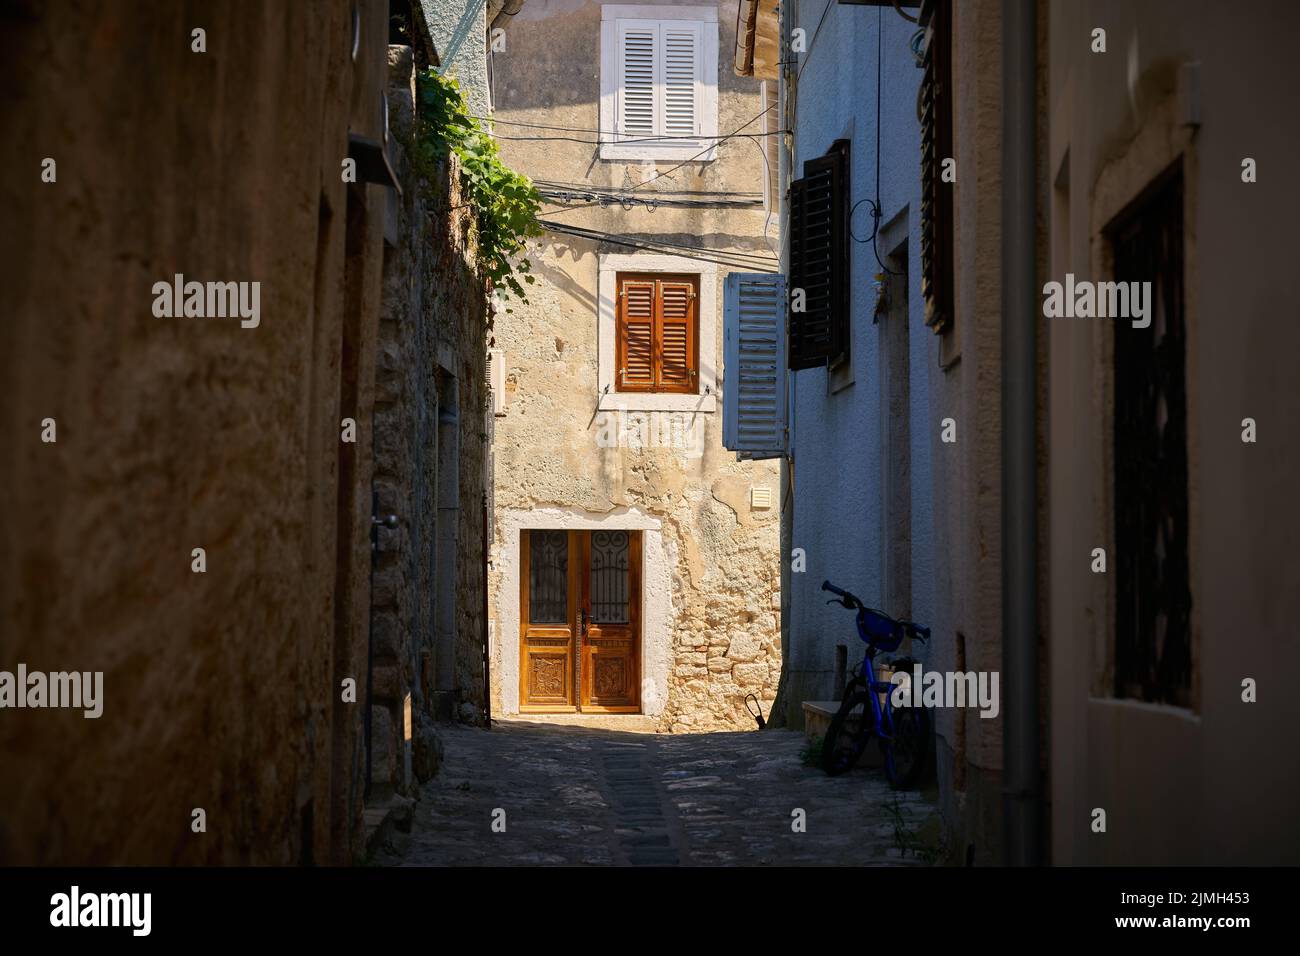 Historique pour la région Maison typique dans une ruelle dans la vieille ville de Krk en Croatie Banque D'Images